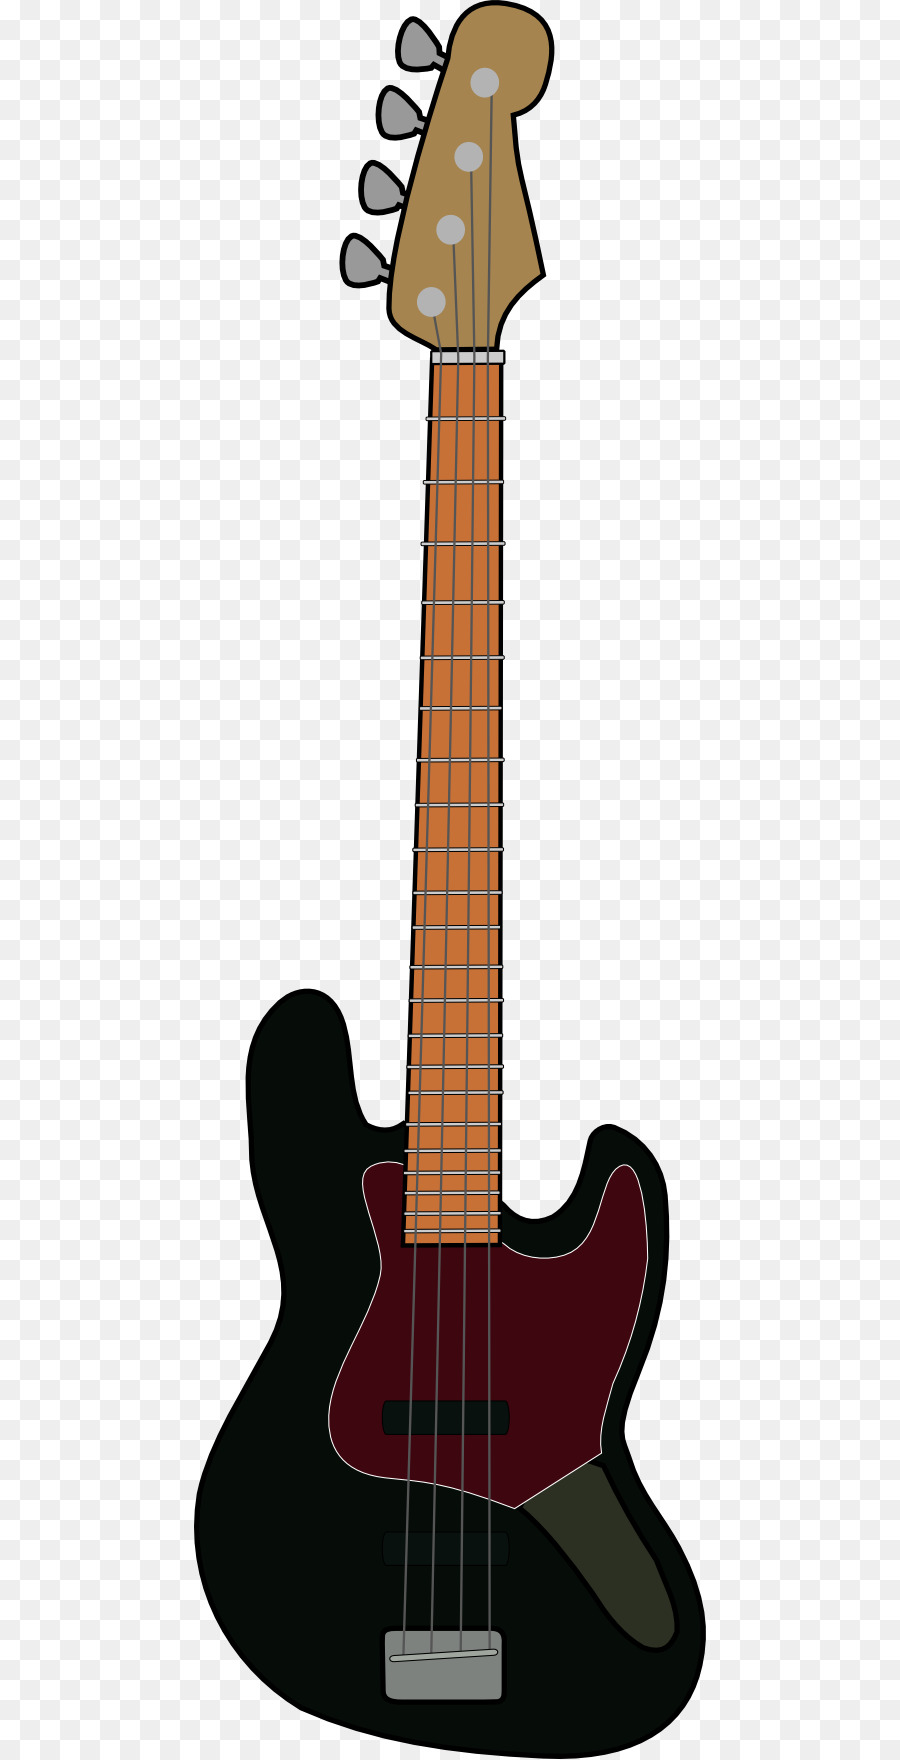 clipart guitar bass guitar